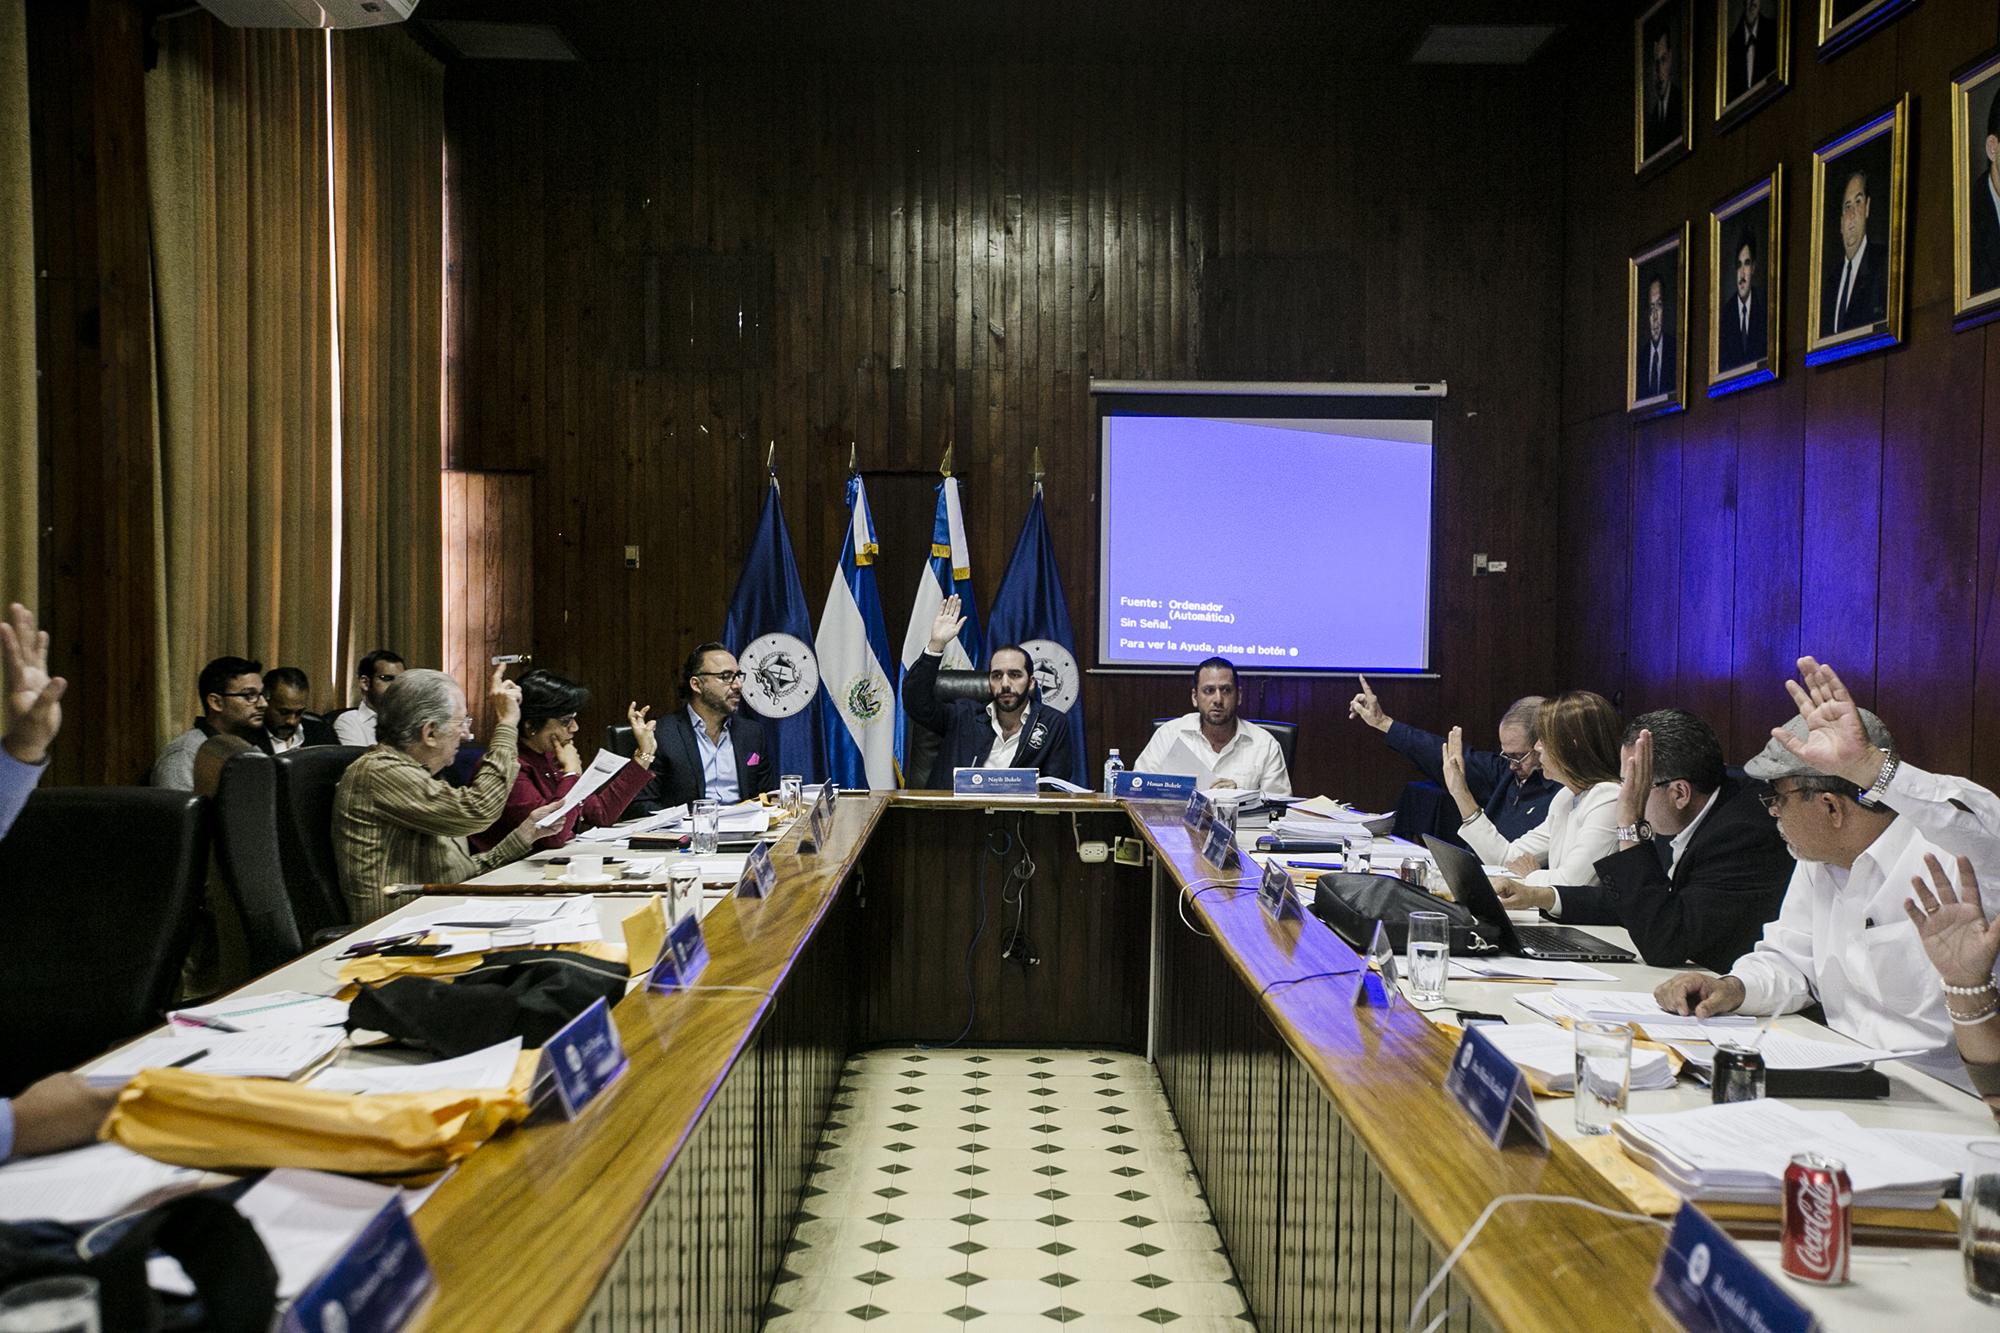 Reunión del Concejo Municipal de San Salvador, presidida por Nayib Bukele, alcalde capitalino, el 16 de noviembre de 2016. Foto de El Faro, por Fred Ramos.